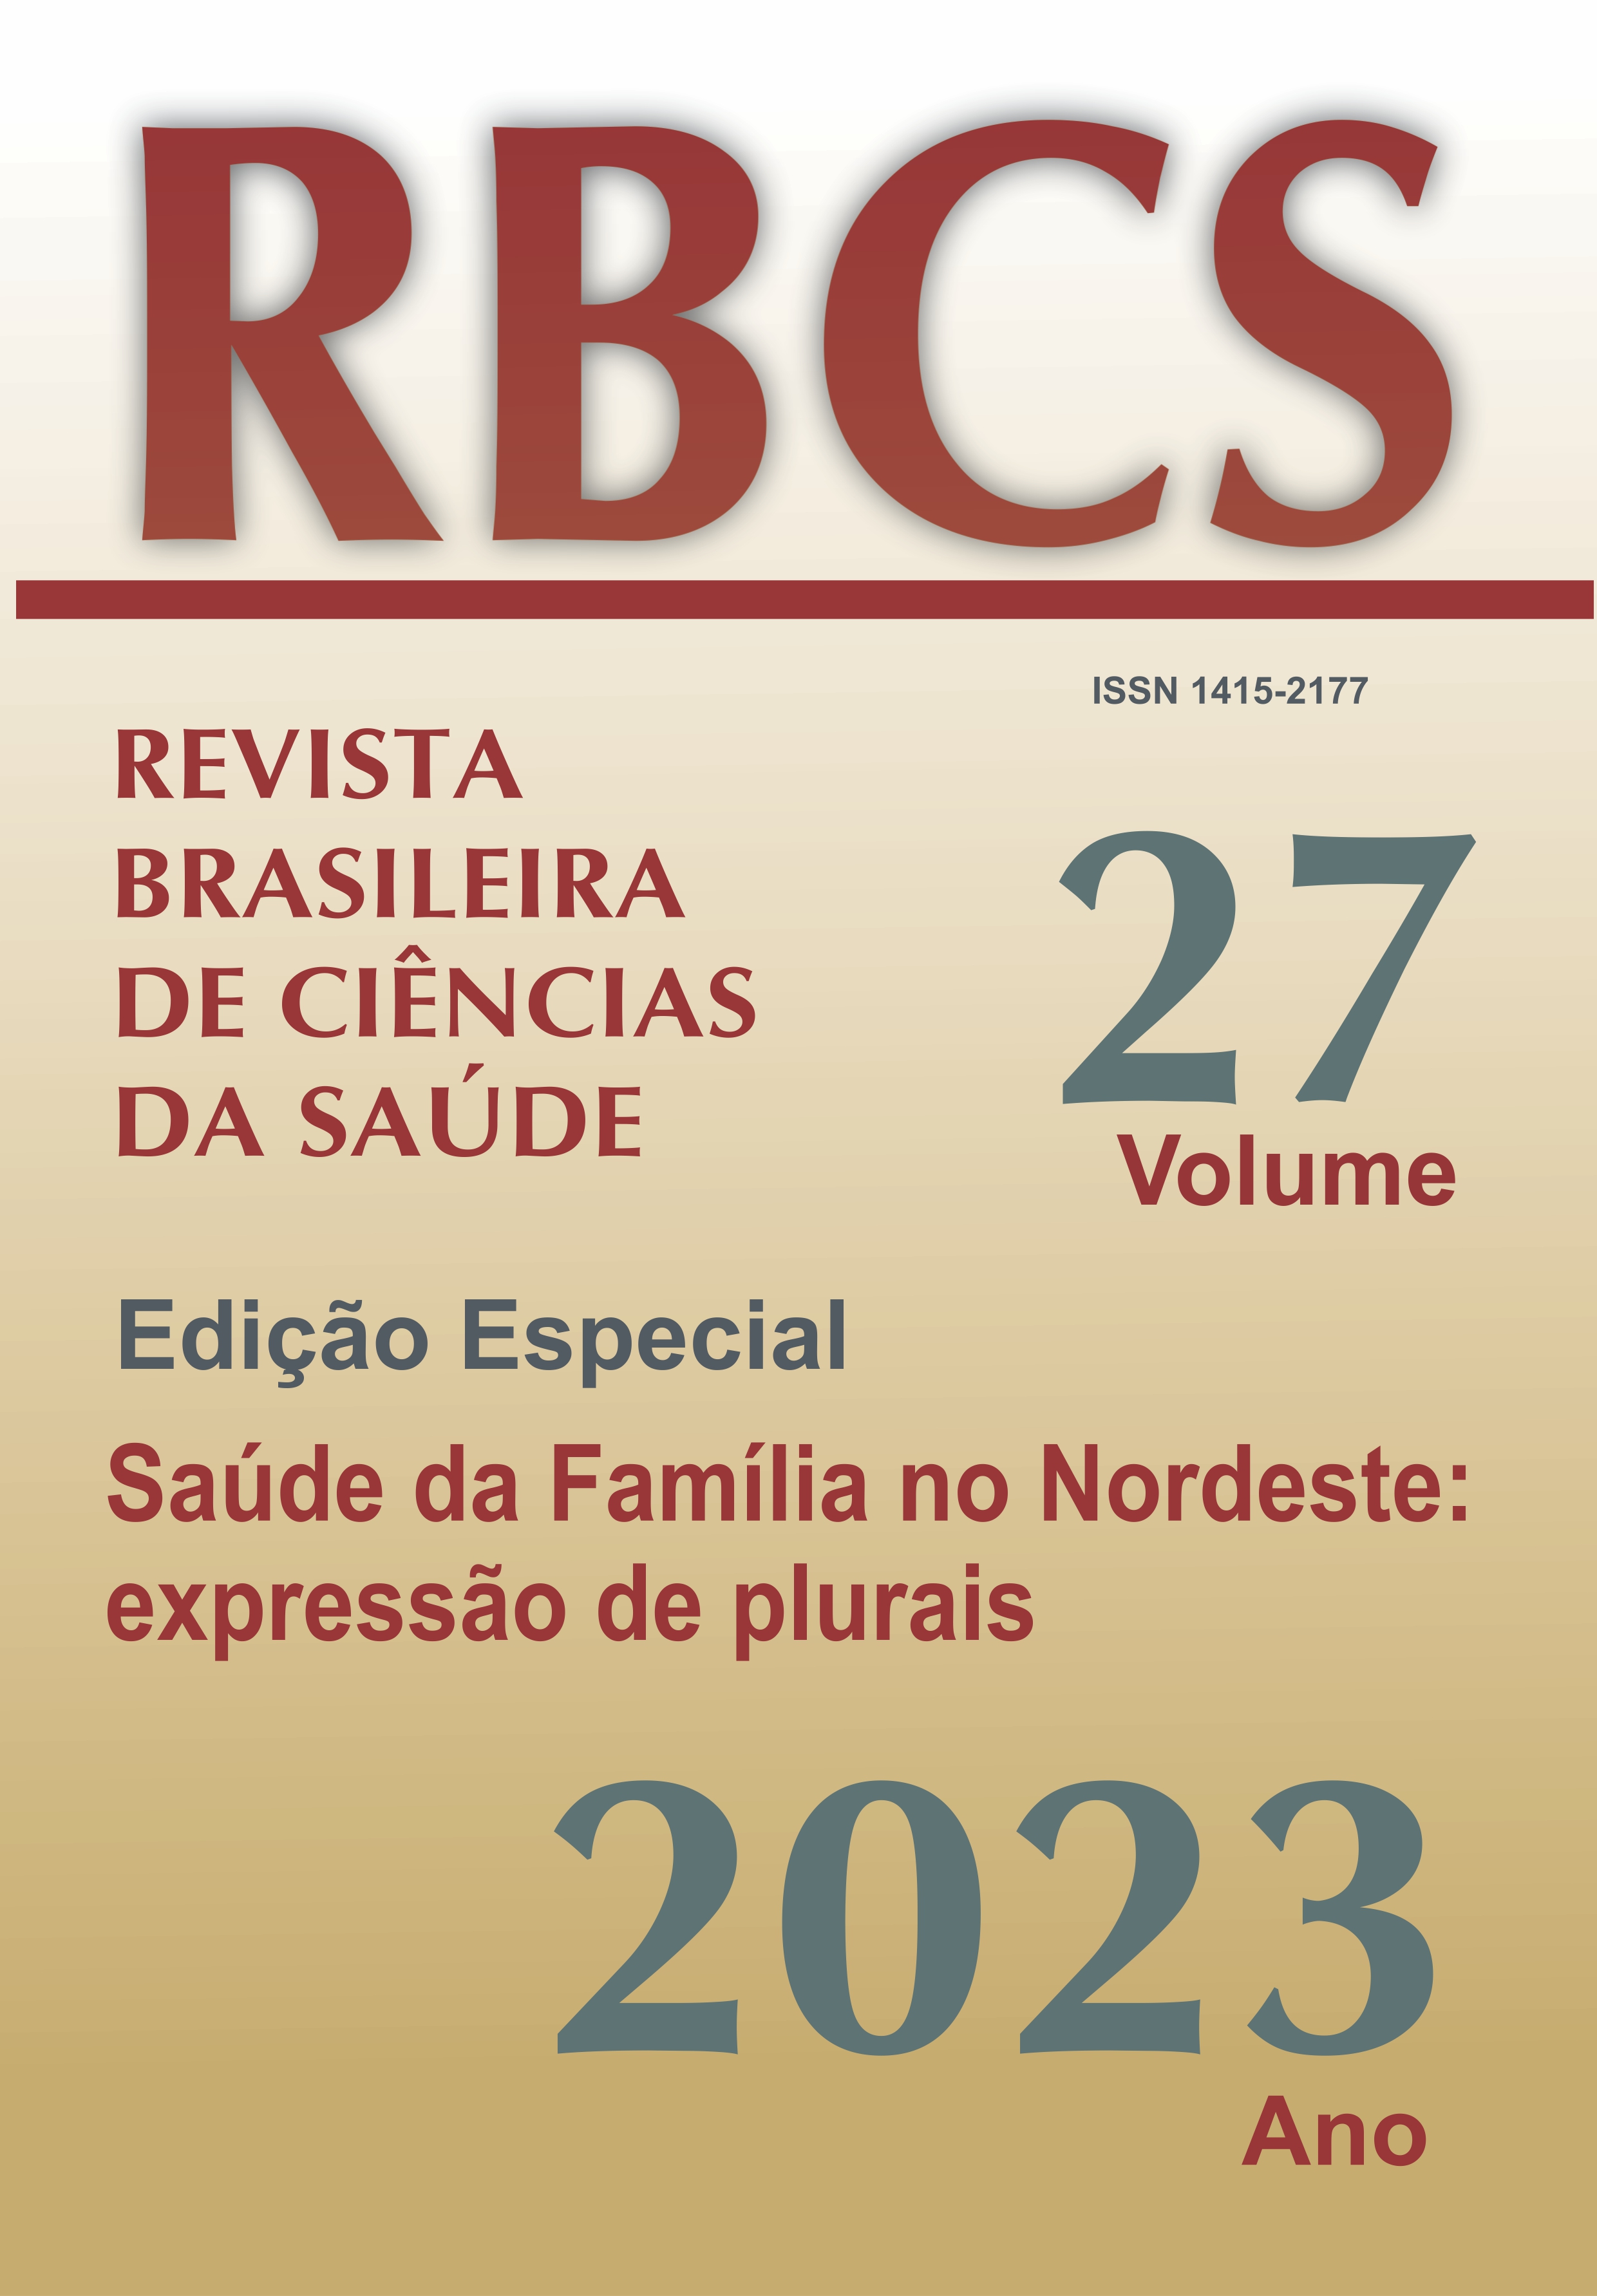 					View Vol. 27 No. Edição Especial (2023): Saúde da Família no Nordeste: expressões de plurais
				